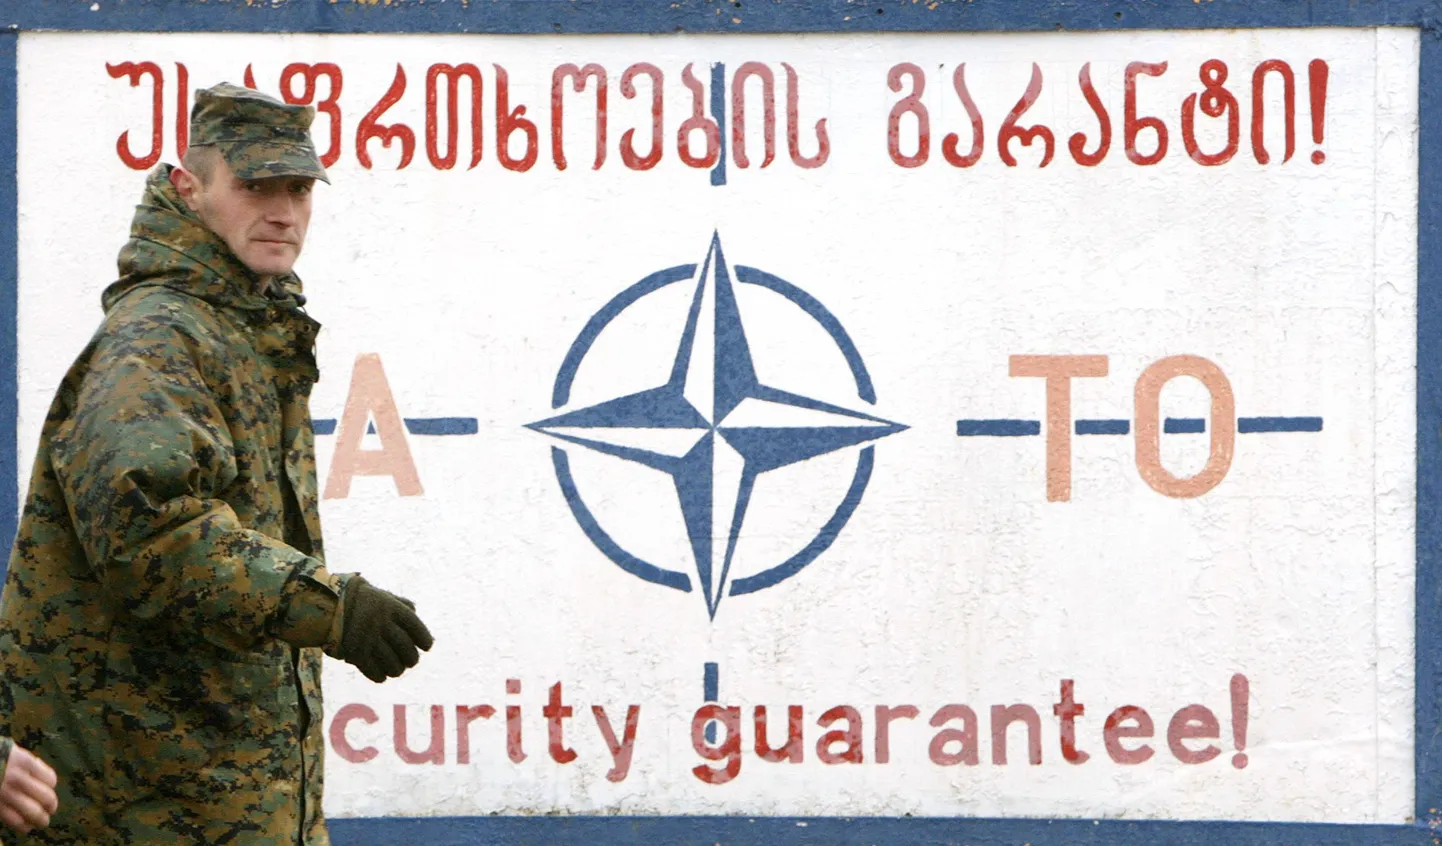 Gruusia sõdur möödumas NATO julgeolekugarantiid kuulutavast plakatist sõjaväebaasis Thbilisi lähjedal.